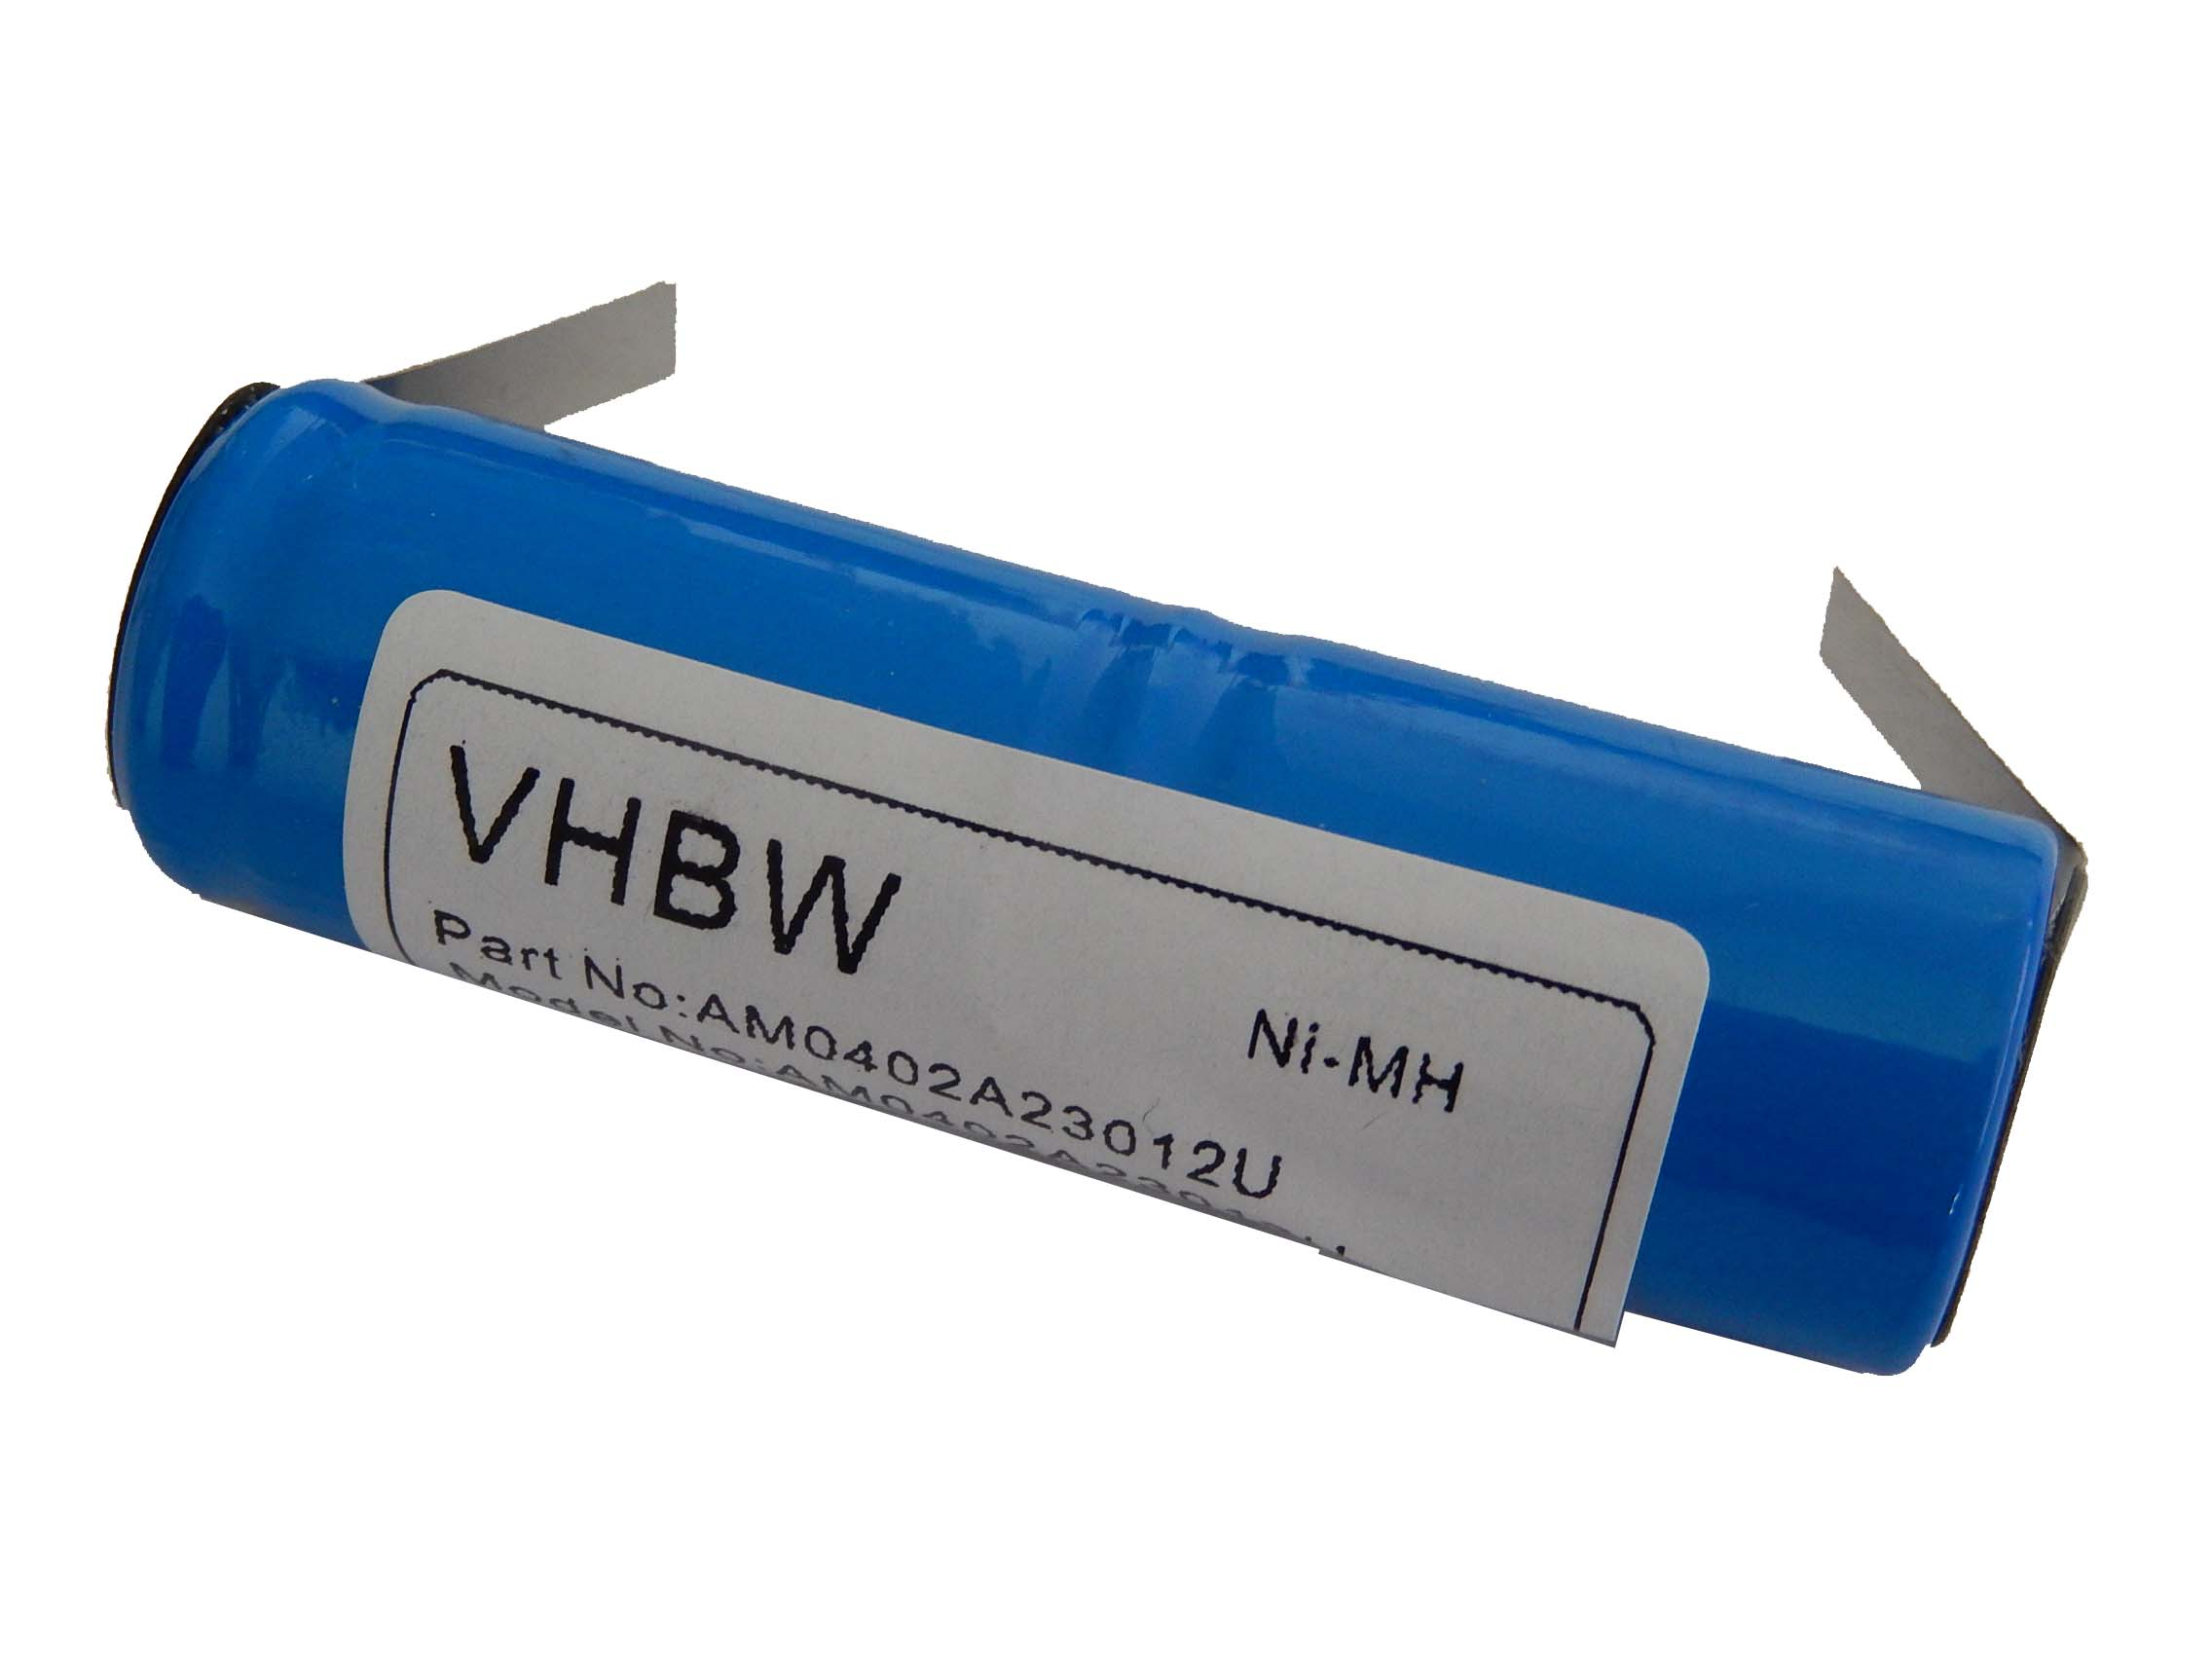 VHBW Ersatz für 2N-600AE, Cd S-RWT1688, 9S-RWT05, 1103425149 Akku, für Volt, mAh RS-MH 3941, 1200 2.4 4717, NiMH S18.500